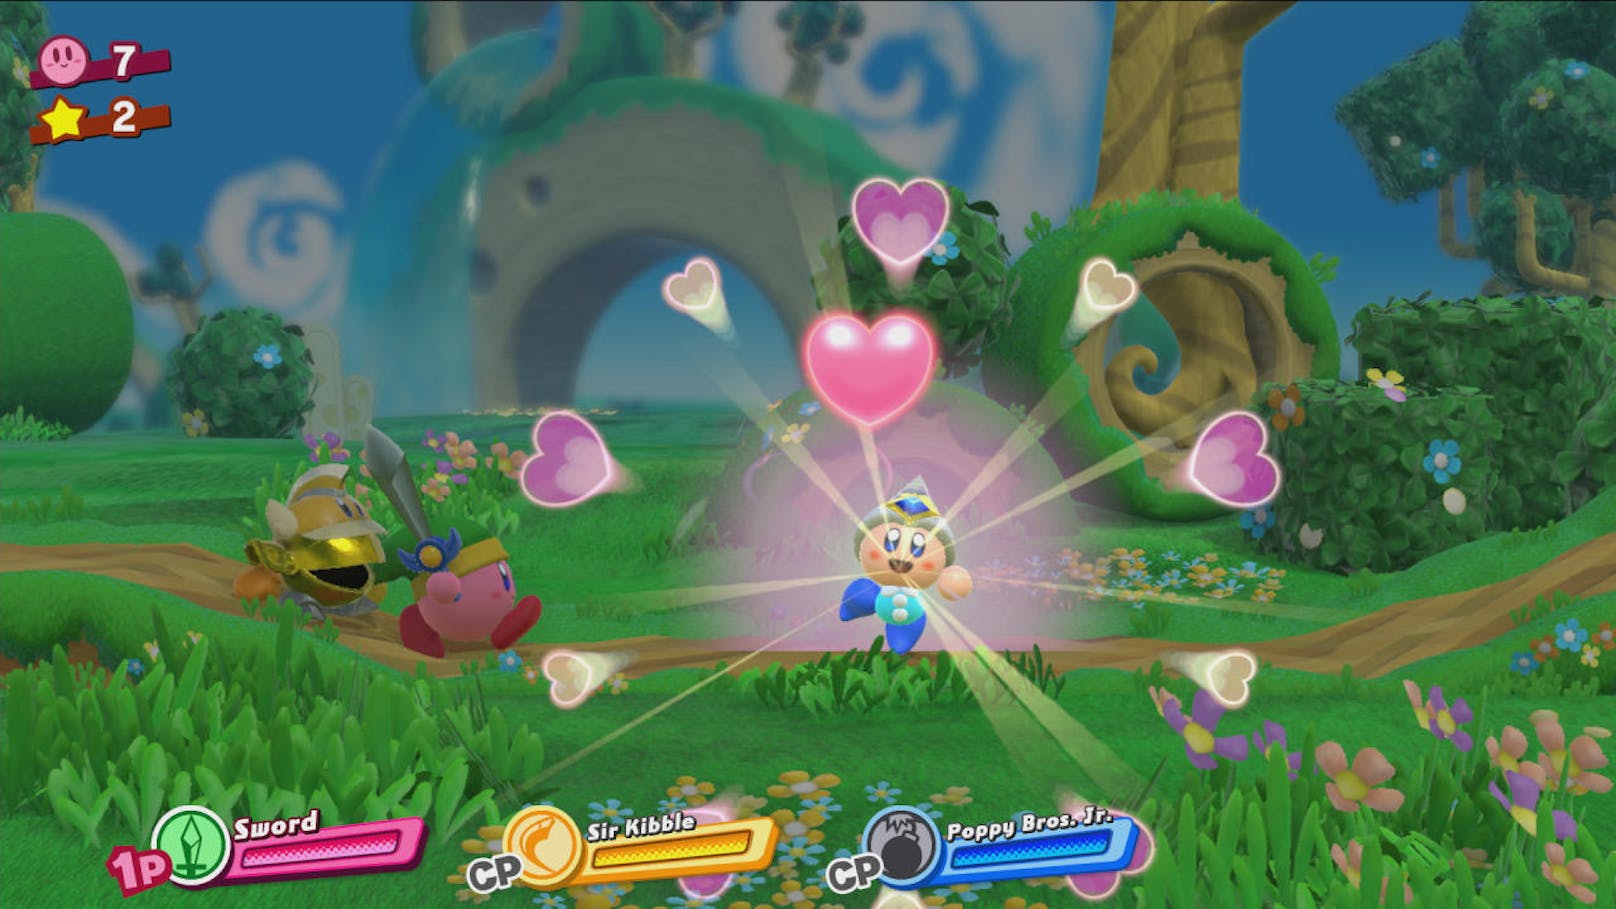 Kirby begegnet seinen Gegnern diesmal nicht (nur) mit Prügel, sondern auch mit Herz! Dabei handelt es sich um ein tatsächliches Herz, das Kirby seinen Gegnern entgegenwerfen und sie damit ganz einfach zu Freunden machen kann.